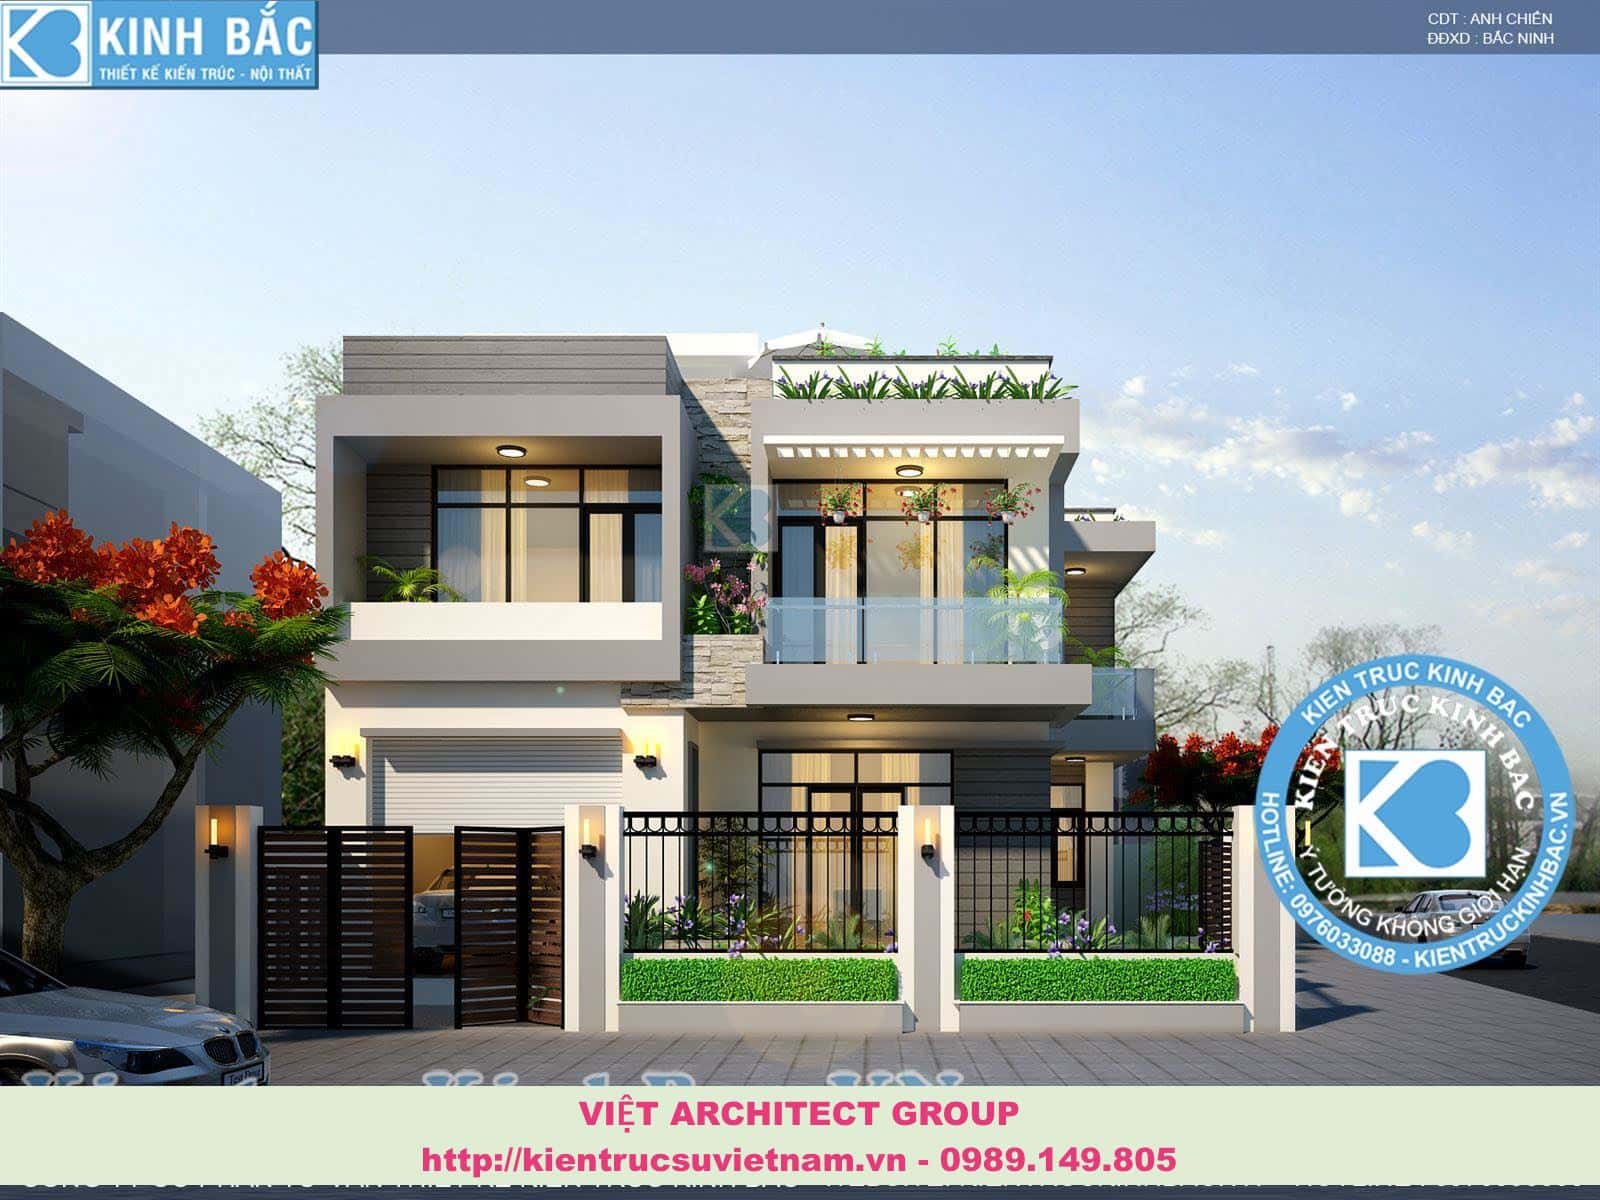 mau biet thu 2 tang dep - Tổng hợp các công trình thiết kế biệt thự đẹp của kiến trúc sư Việt Architect